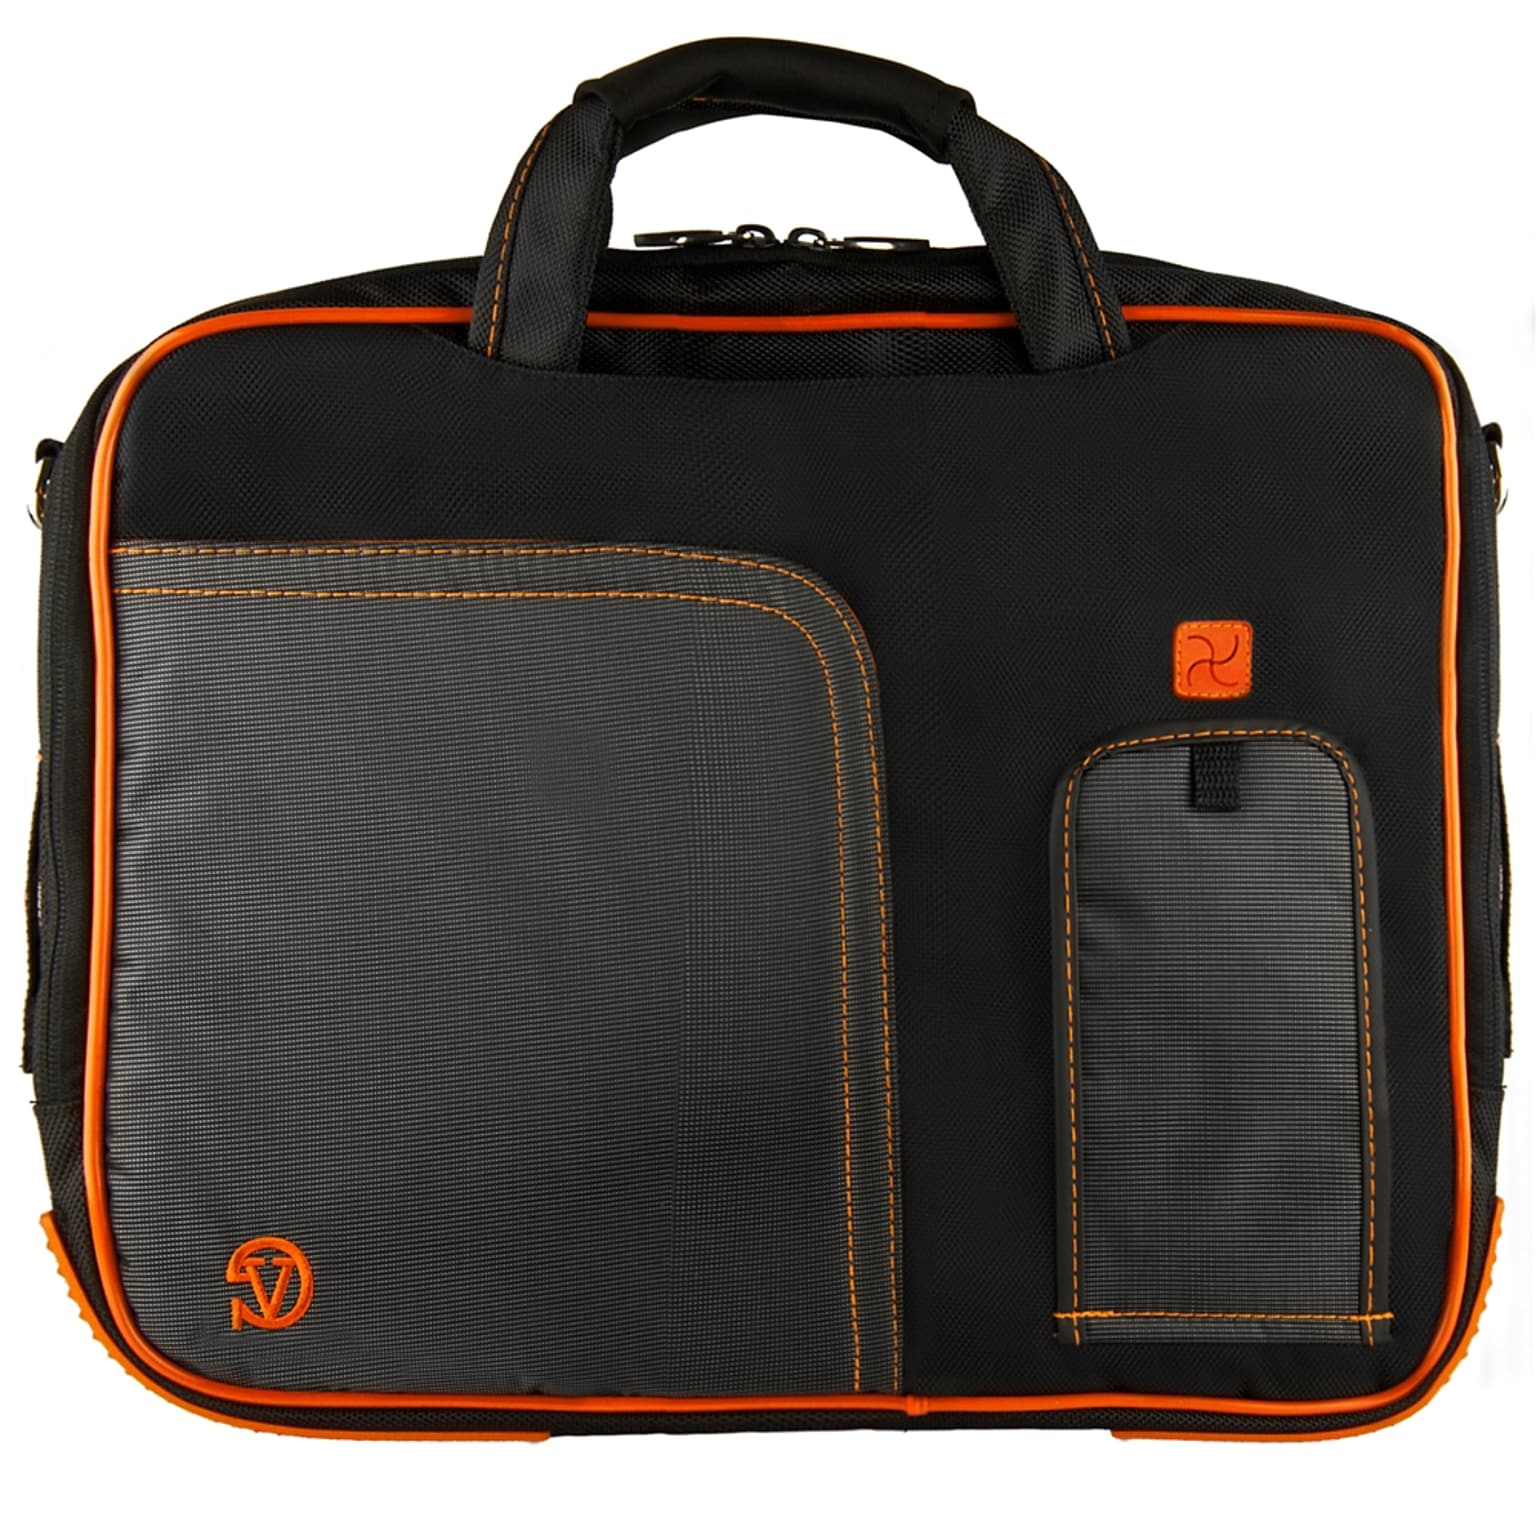 Vangoddy Pindar Laptop Sleeve Messenger Shoulder Bag Fits up to 15 Laptops - Large (Black and Orange)